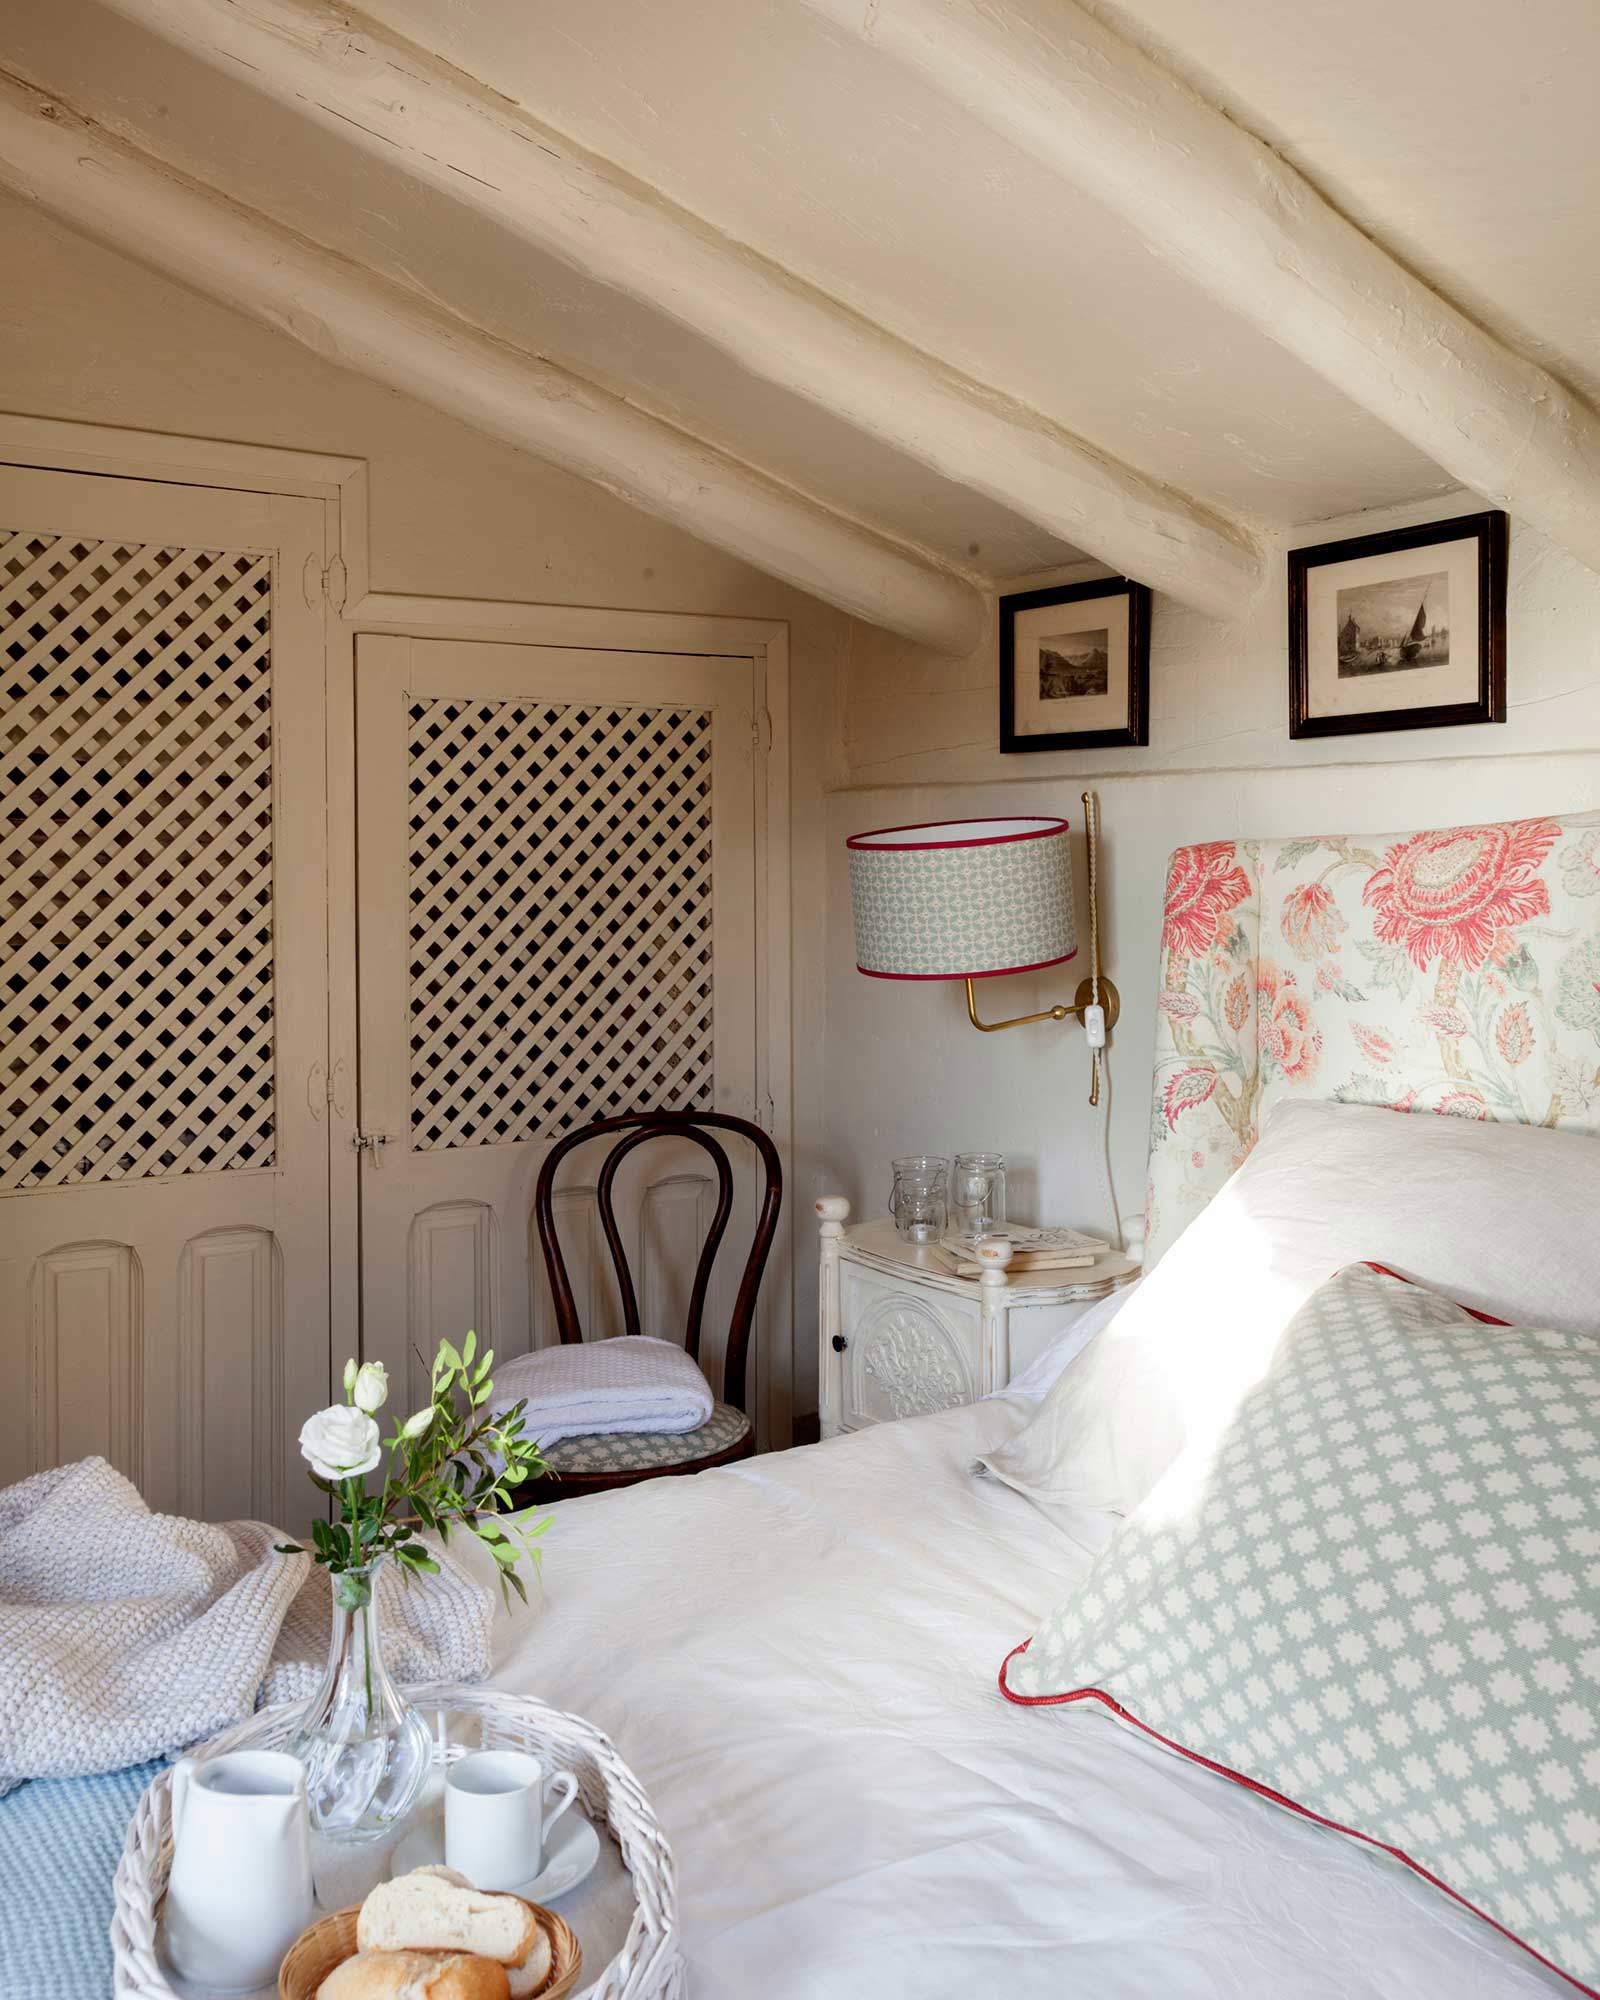 Dormitorio abuhardillado con cabecero tapizado y estampado floral, armarios empotrados con puerta de rejilla y aplique.